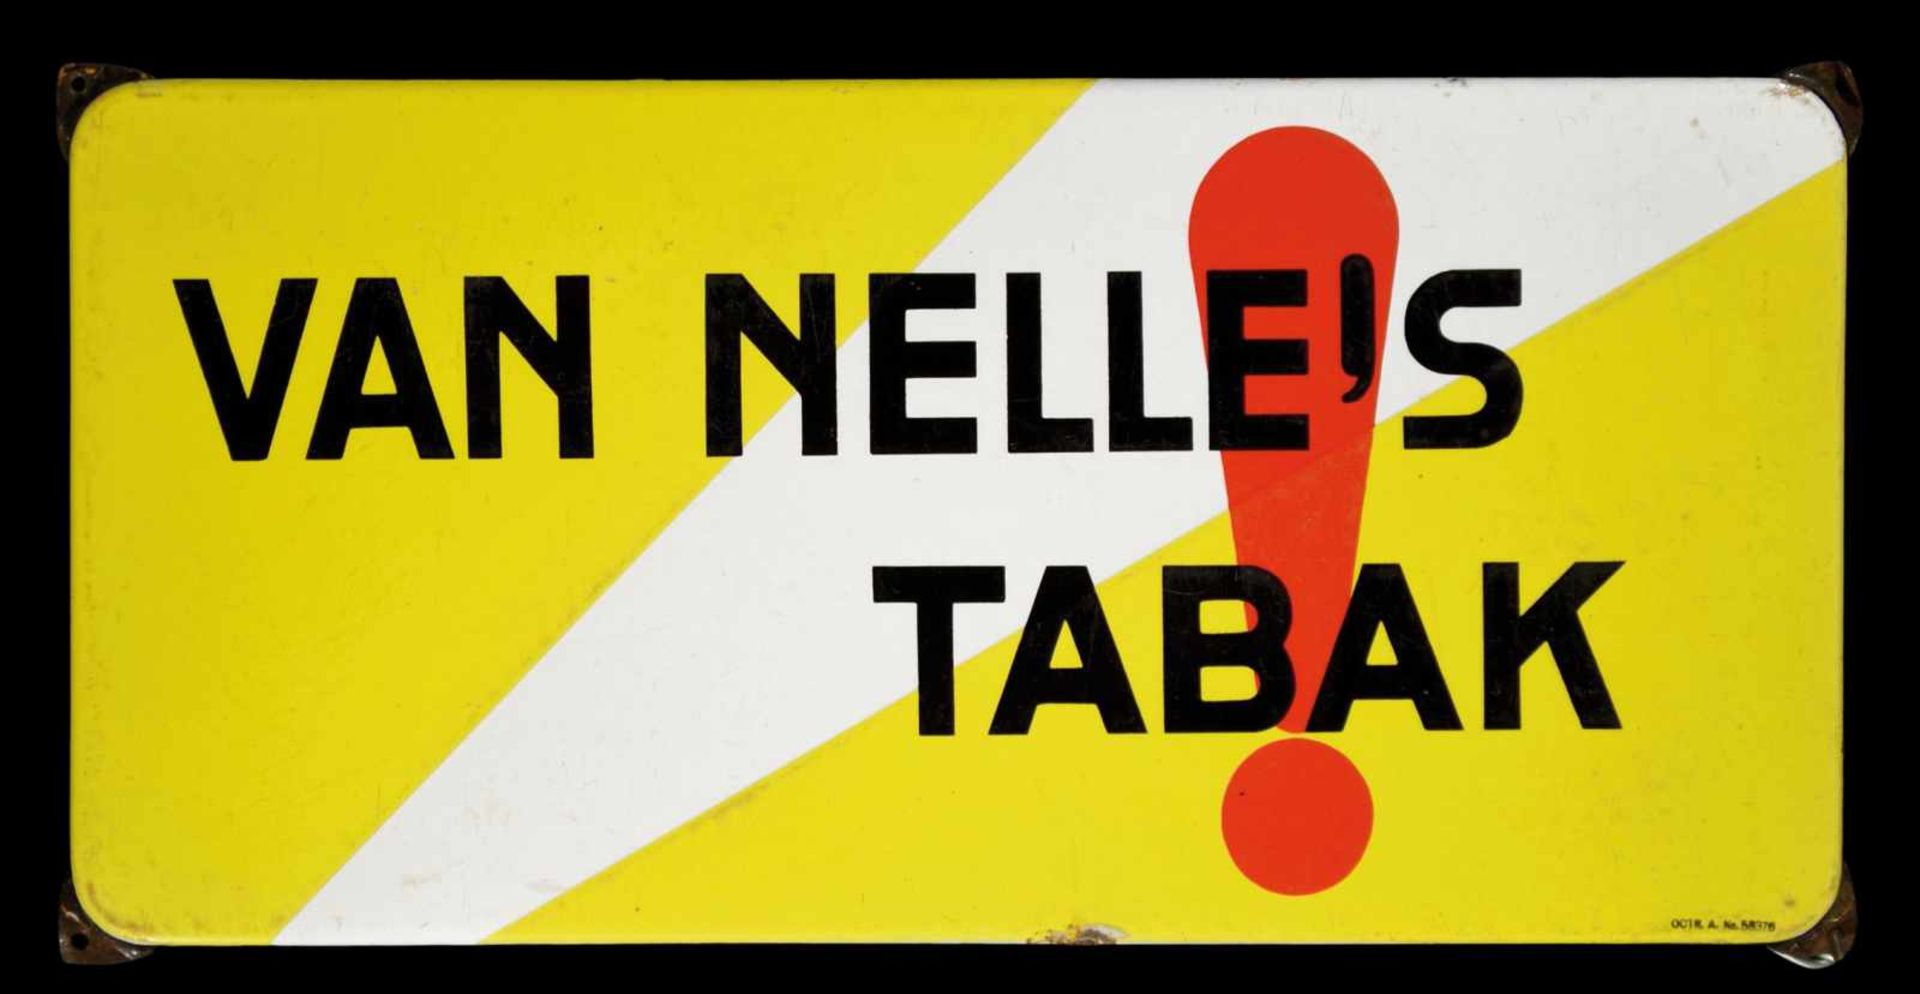 VAN NELLE's TABAK (2) Emailschild, abgekantet, dick schabloniert, Niederlande um 1933, 50 x 25 cm,